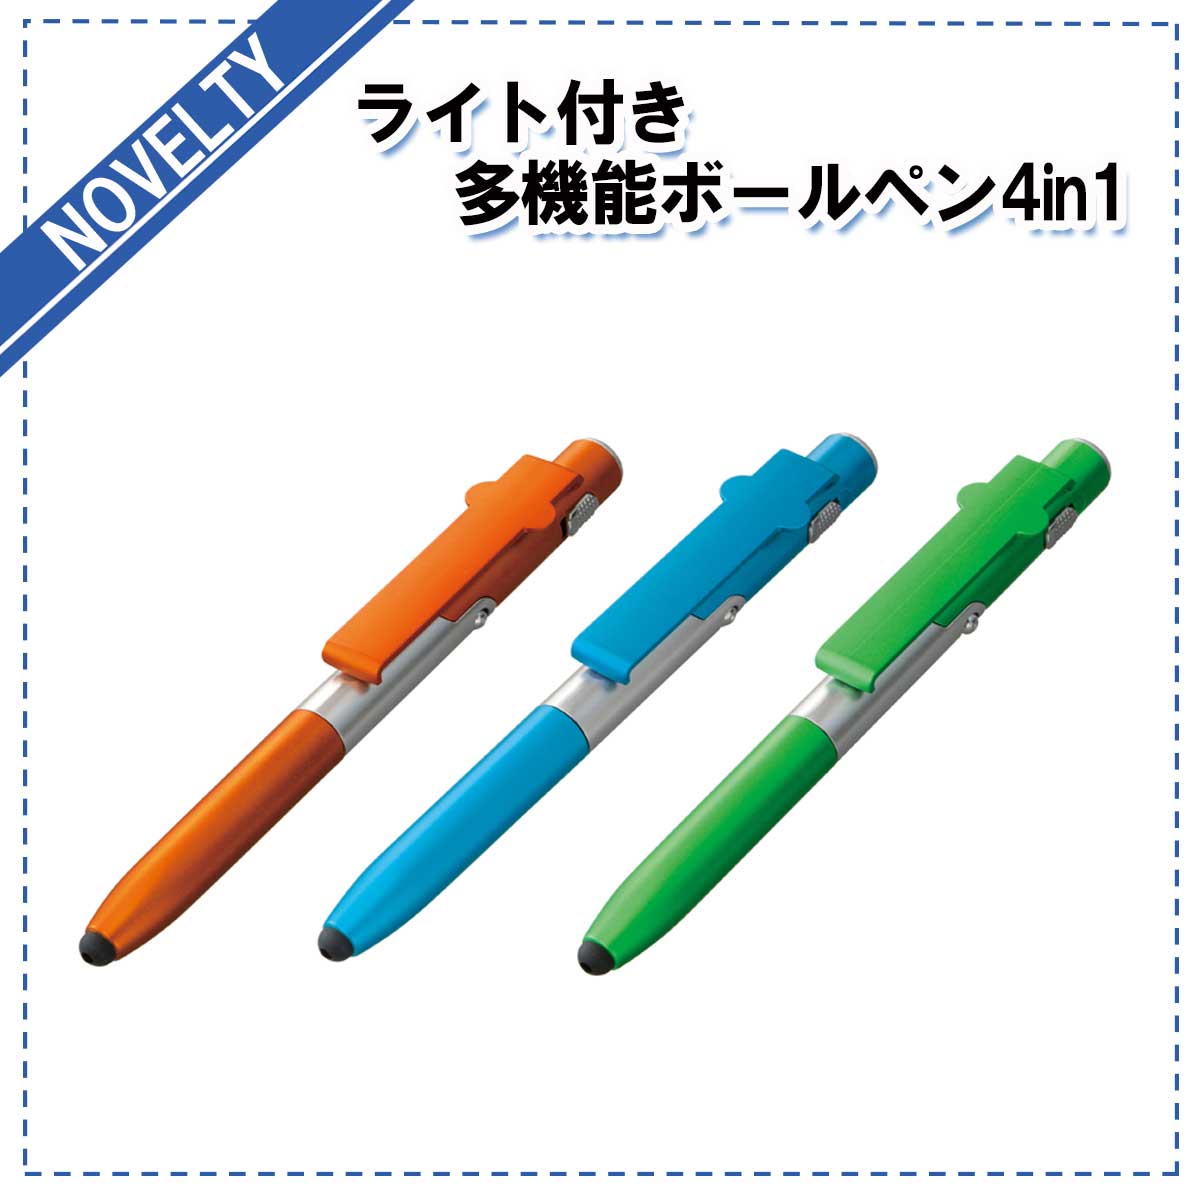 【ノベルティグッズ】 ライト付き多機能ボールペン4in1